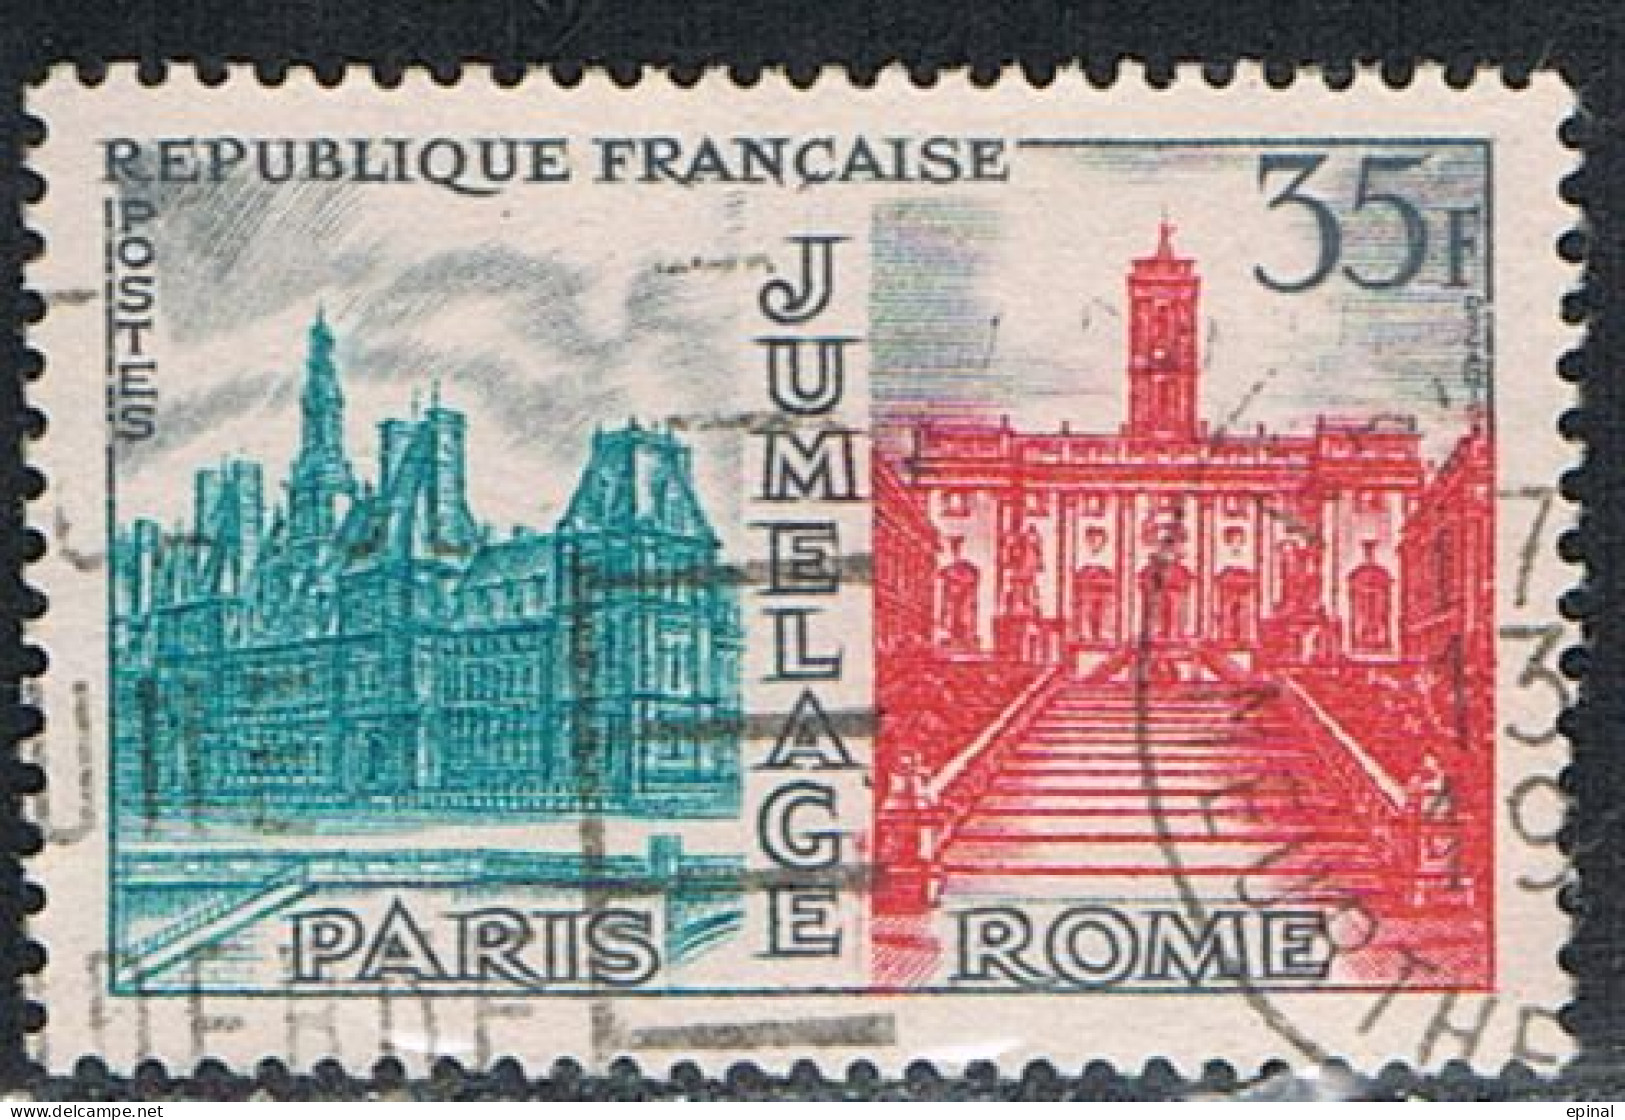 FRANCE : N° 1176 Oblitéré (Jumelage Paris-Rome) - PRIX FIXE - - Oblitérés